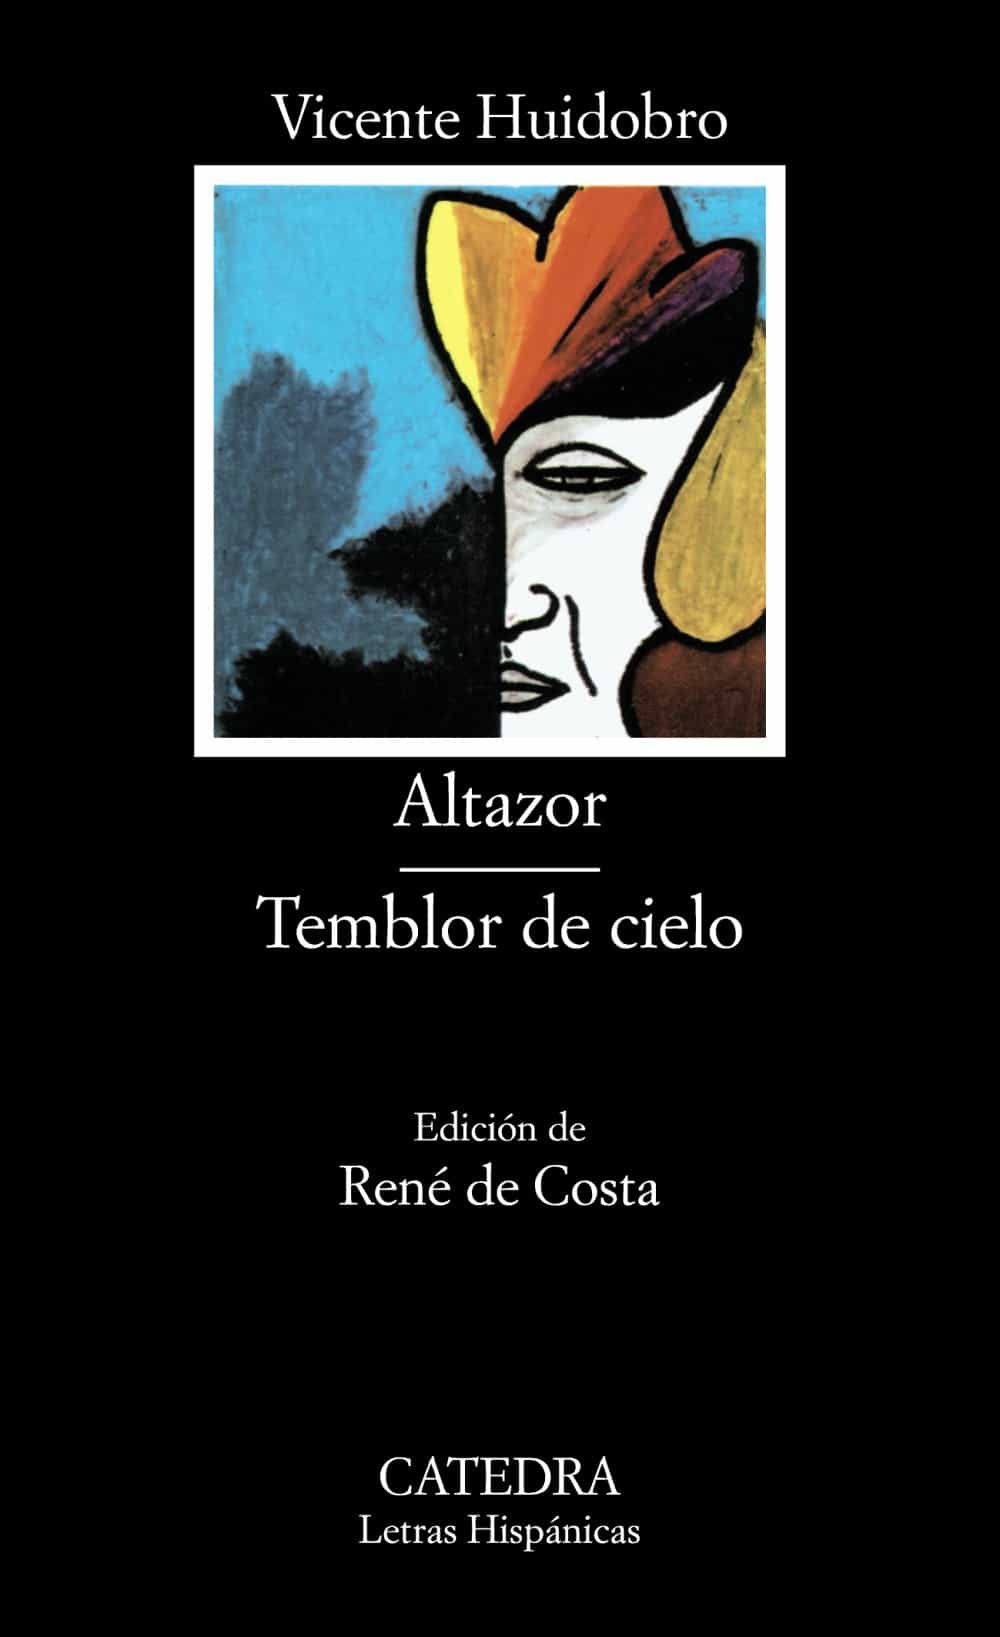 Vicente Huidobro: Altazor y Temblor de cielo (Spanish language, 1998, Cátedra)